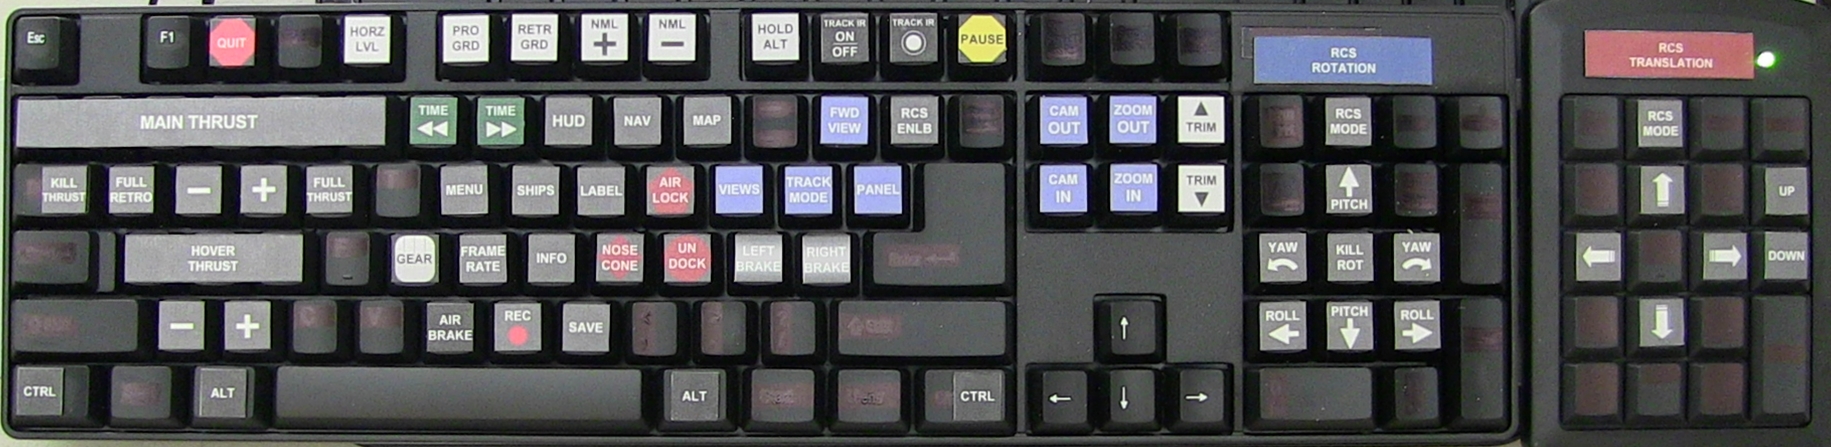 K153B keyboard mod.jpg